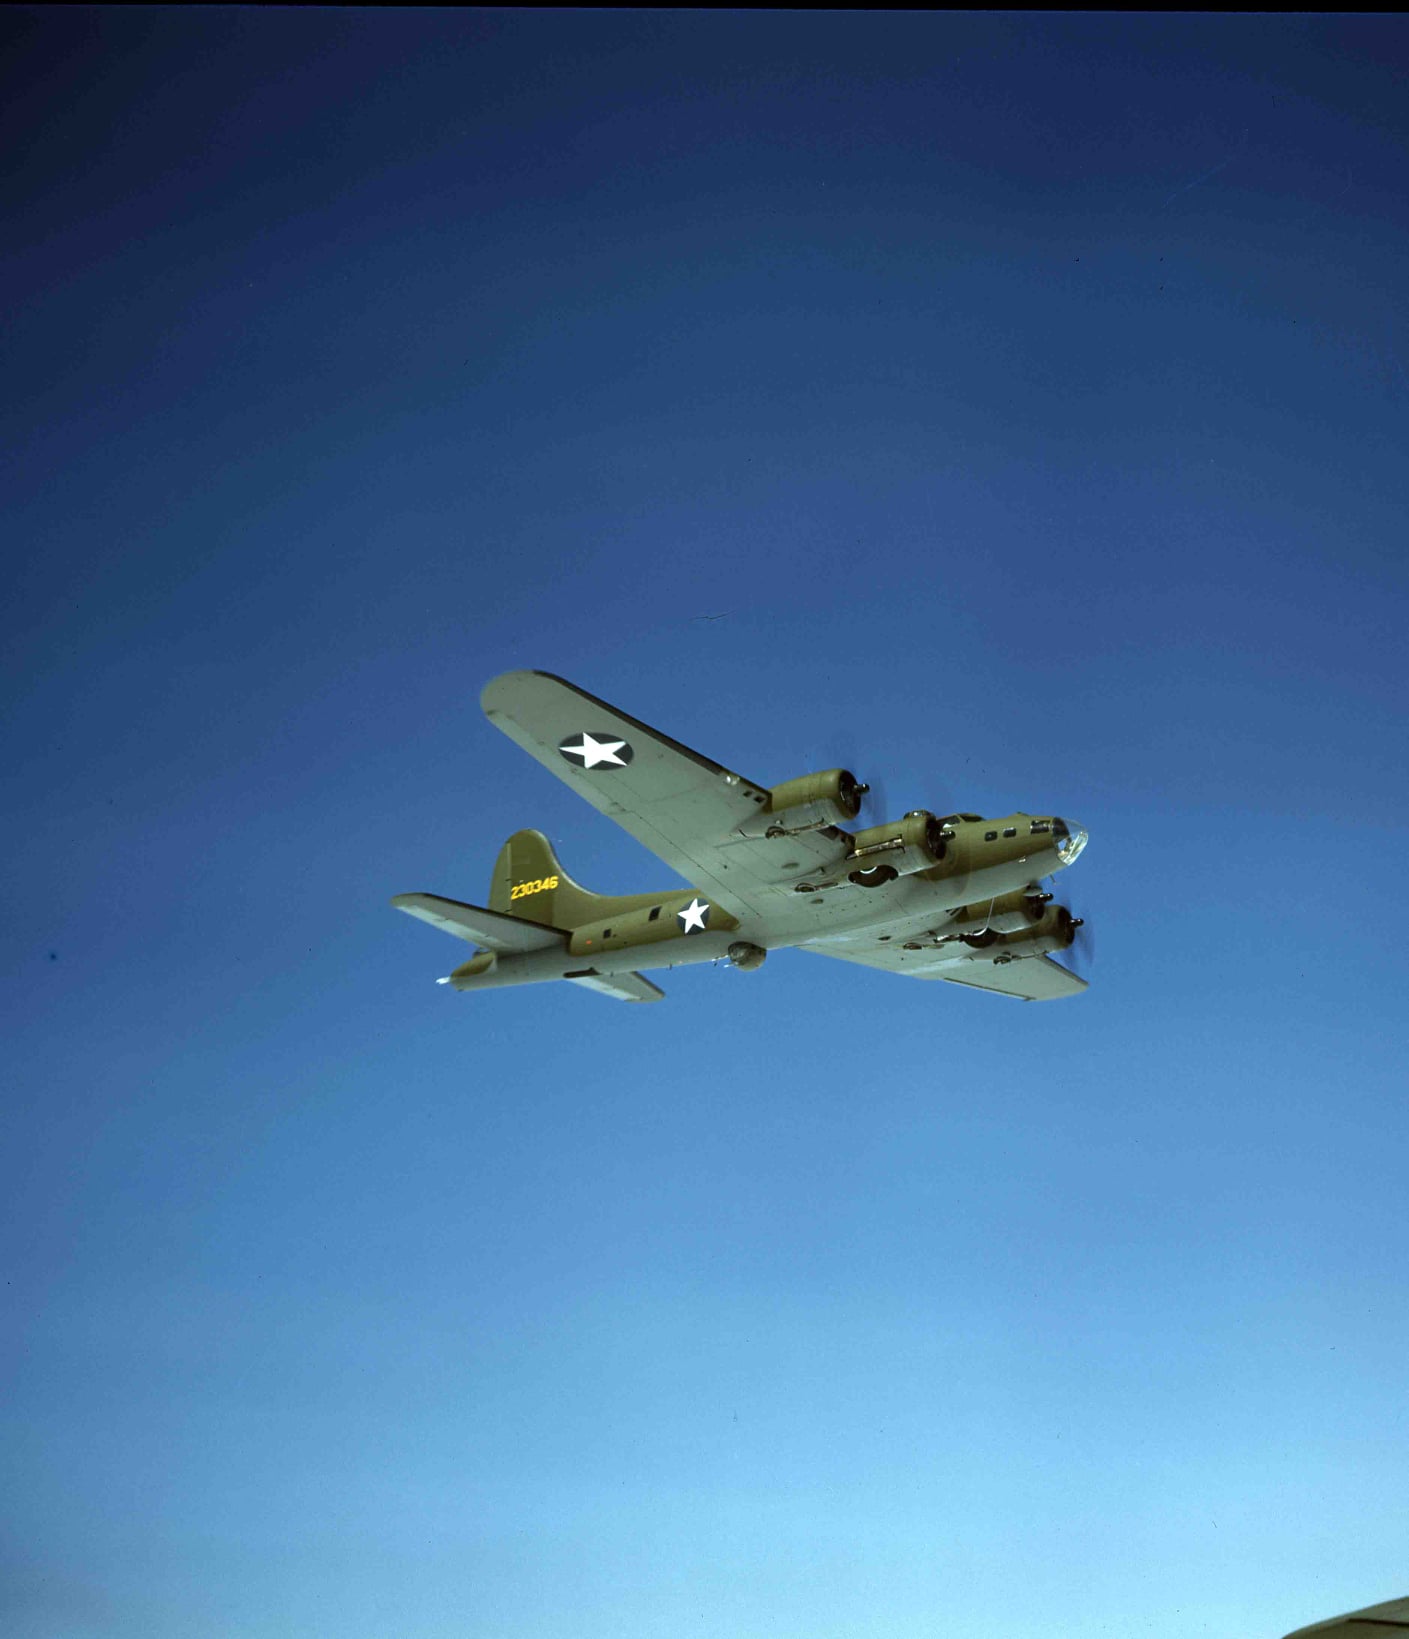 B-17 #42-30346